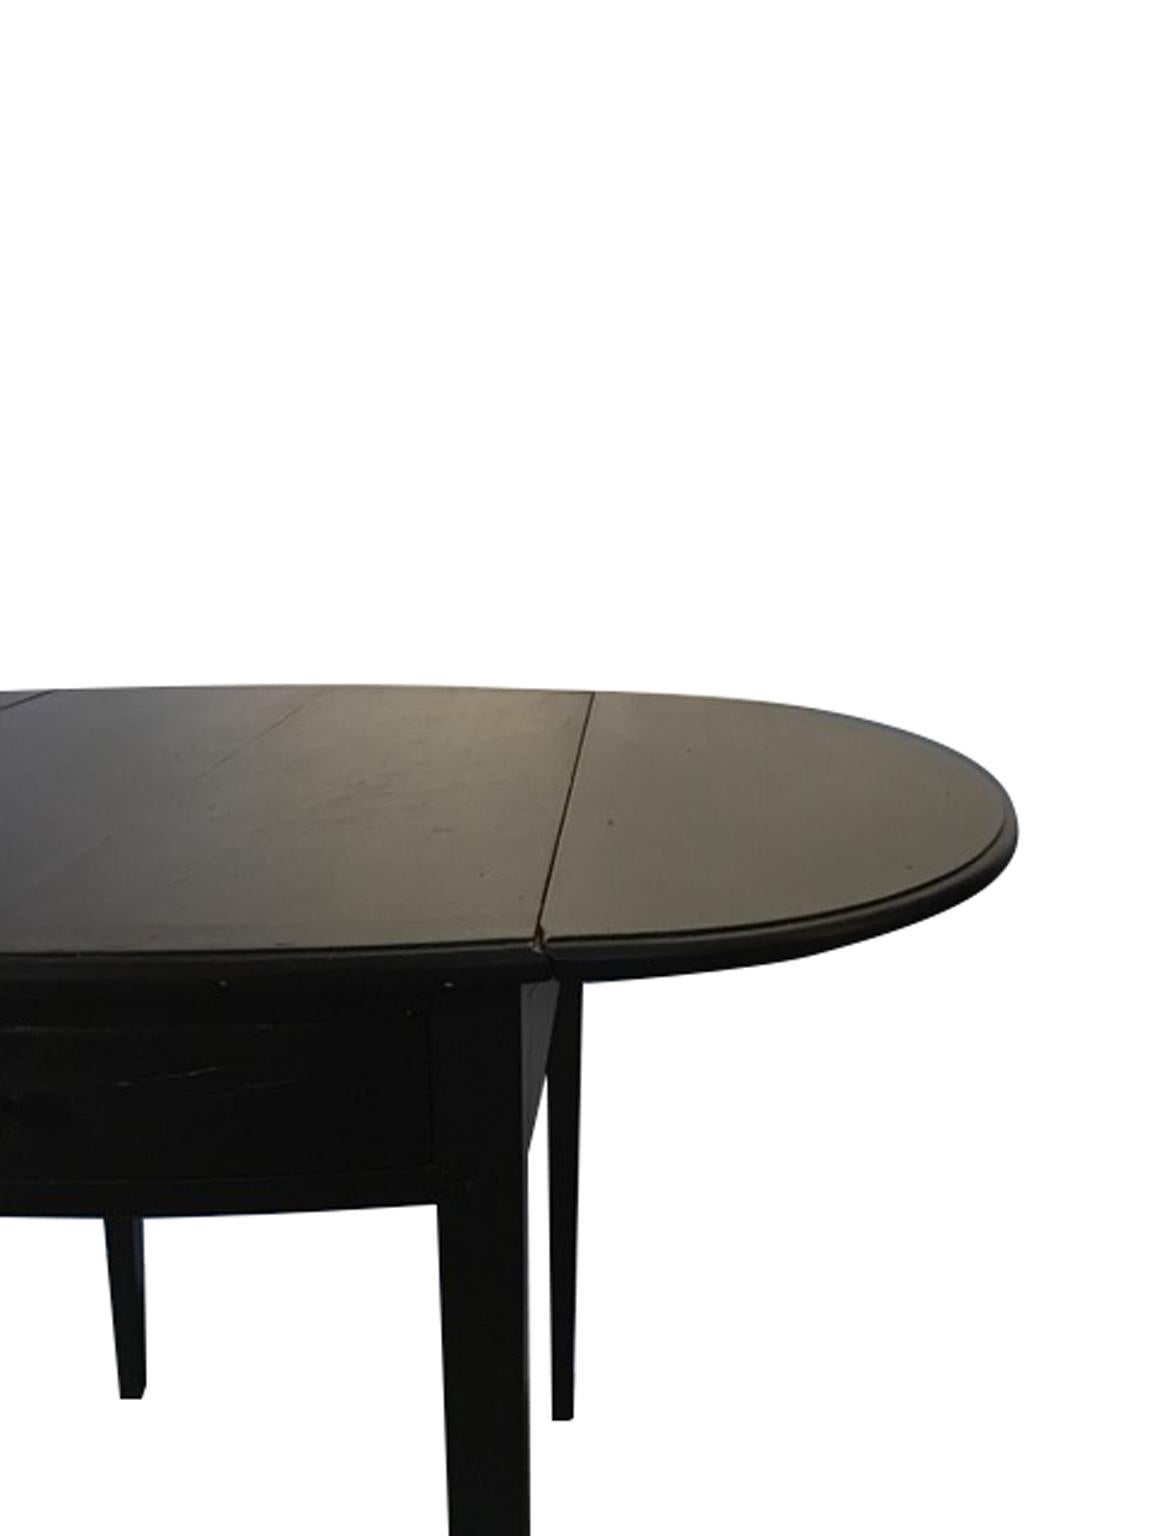 Dieser praktische und elegante Tisch hat auf jeder Seite eine Klappe:: die je nach Bedarf angehoben und abgesenkt werden kann. 
Die beiden Schubladen sind Fälschungen. Die handgefertigte Oberfläche gibt das Aussehen eines antiken Möbelstücks wieder.